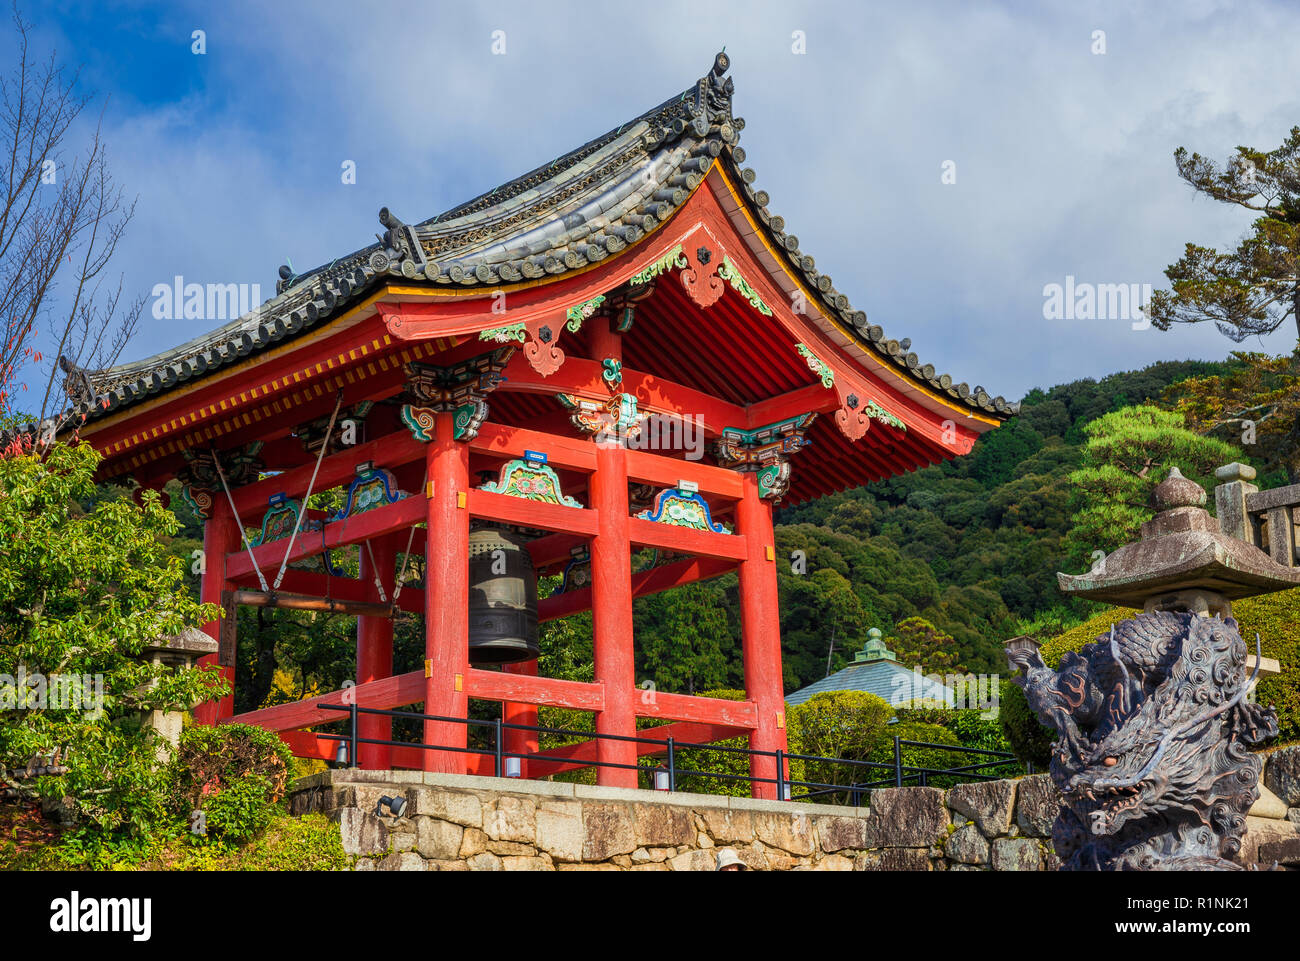 Giappone tradizionale architettura religiosa. Tempio di Kiyomizu vecchia torre campanaria eretta alla fine del XVI secolo Foto Stock